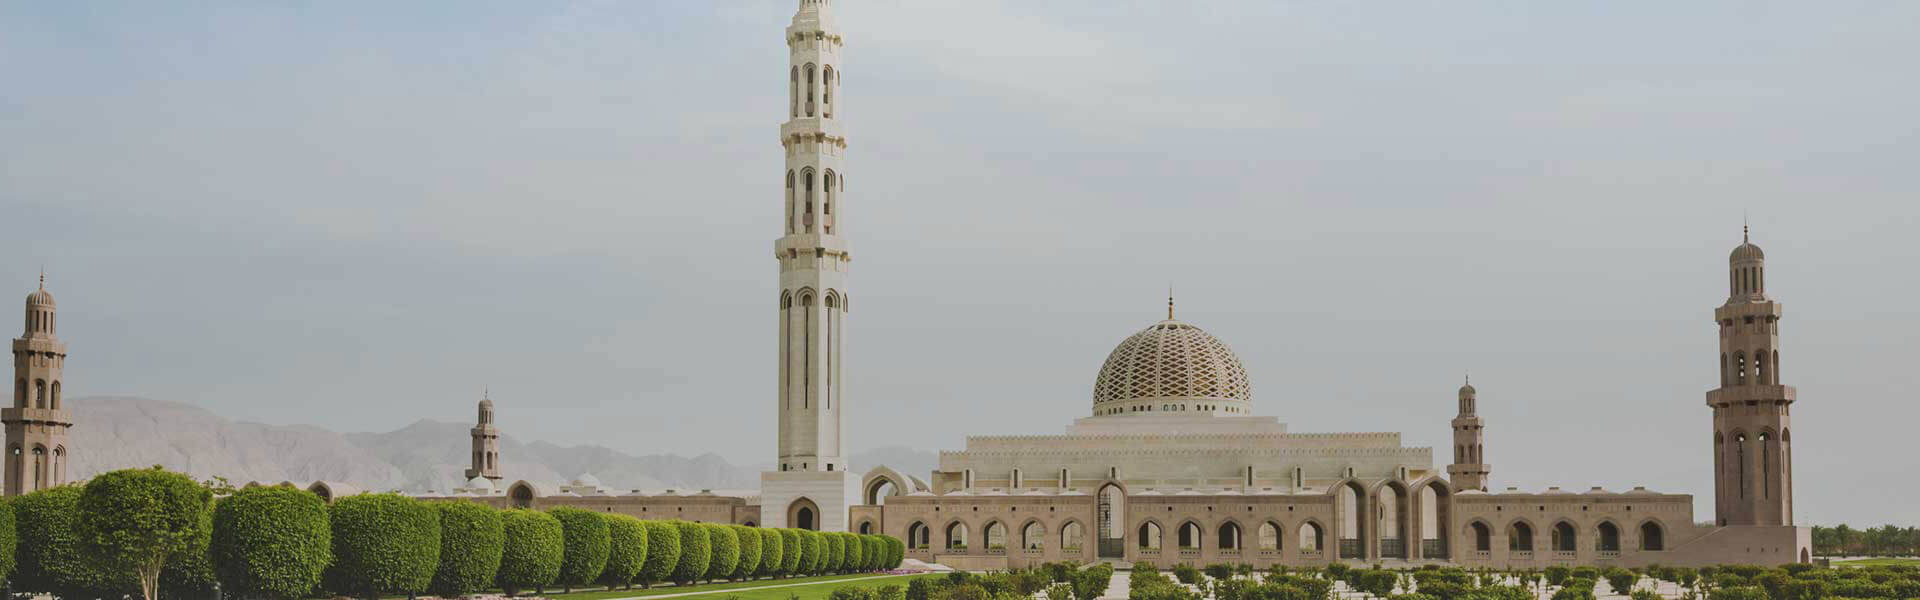 Moscheagrande In Oman Sfondo